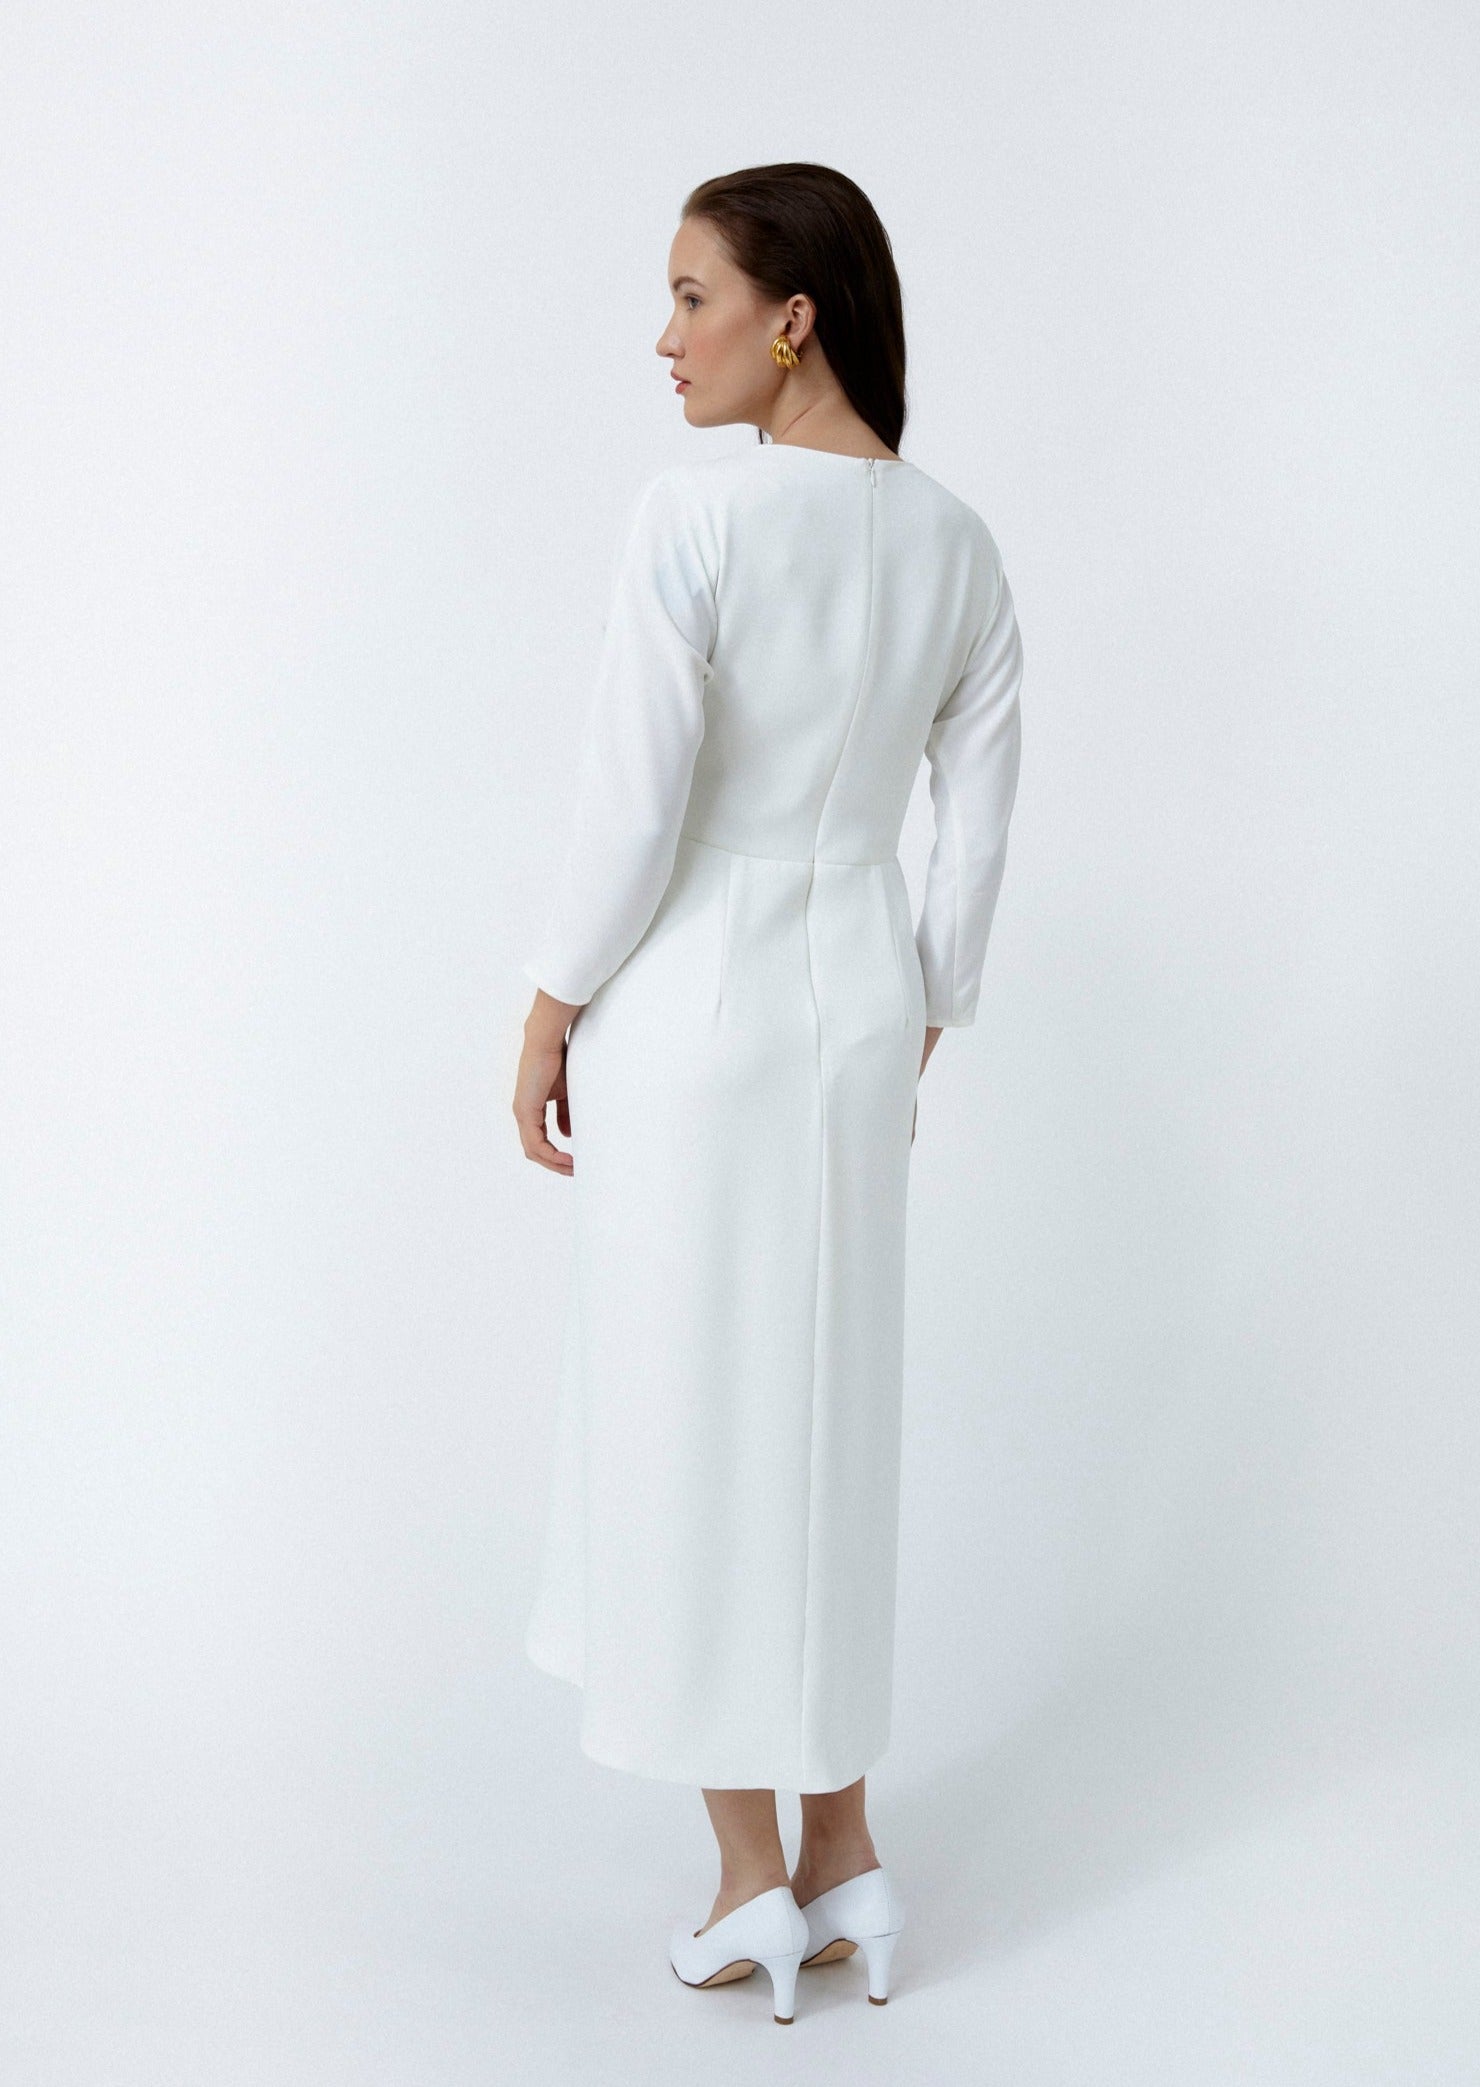 SCARLETT DRESS, WHITE